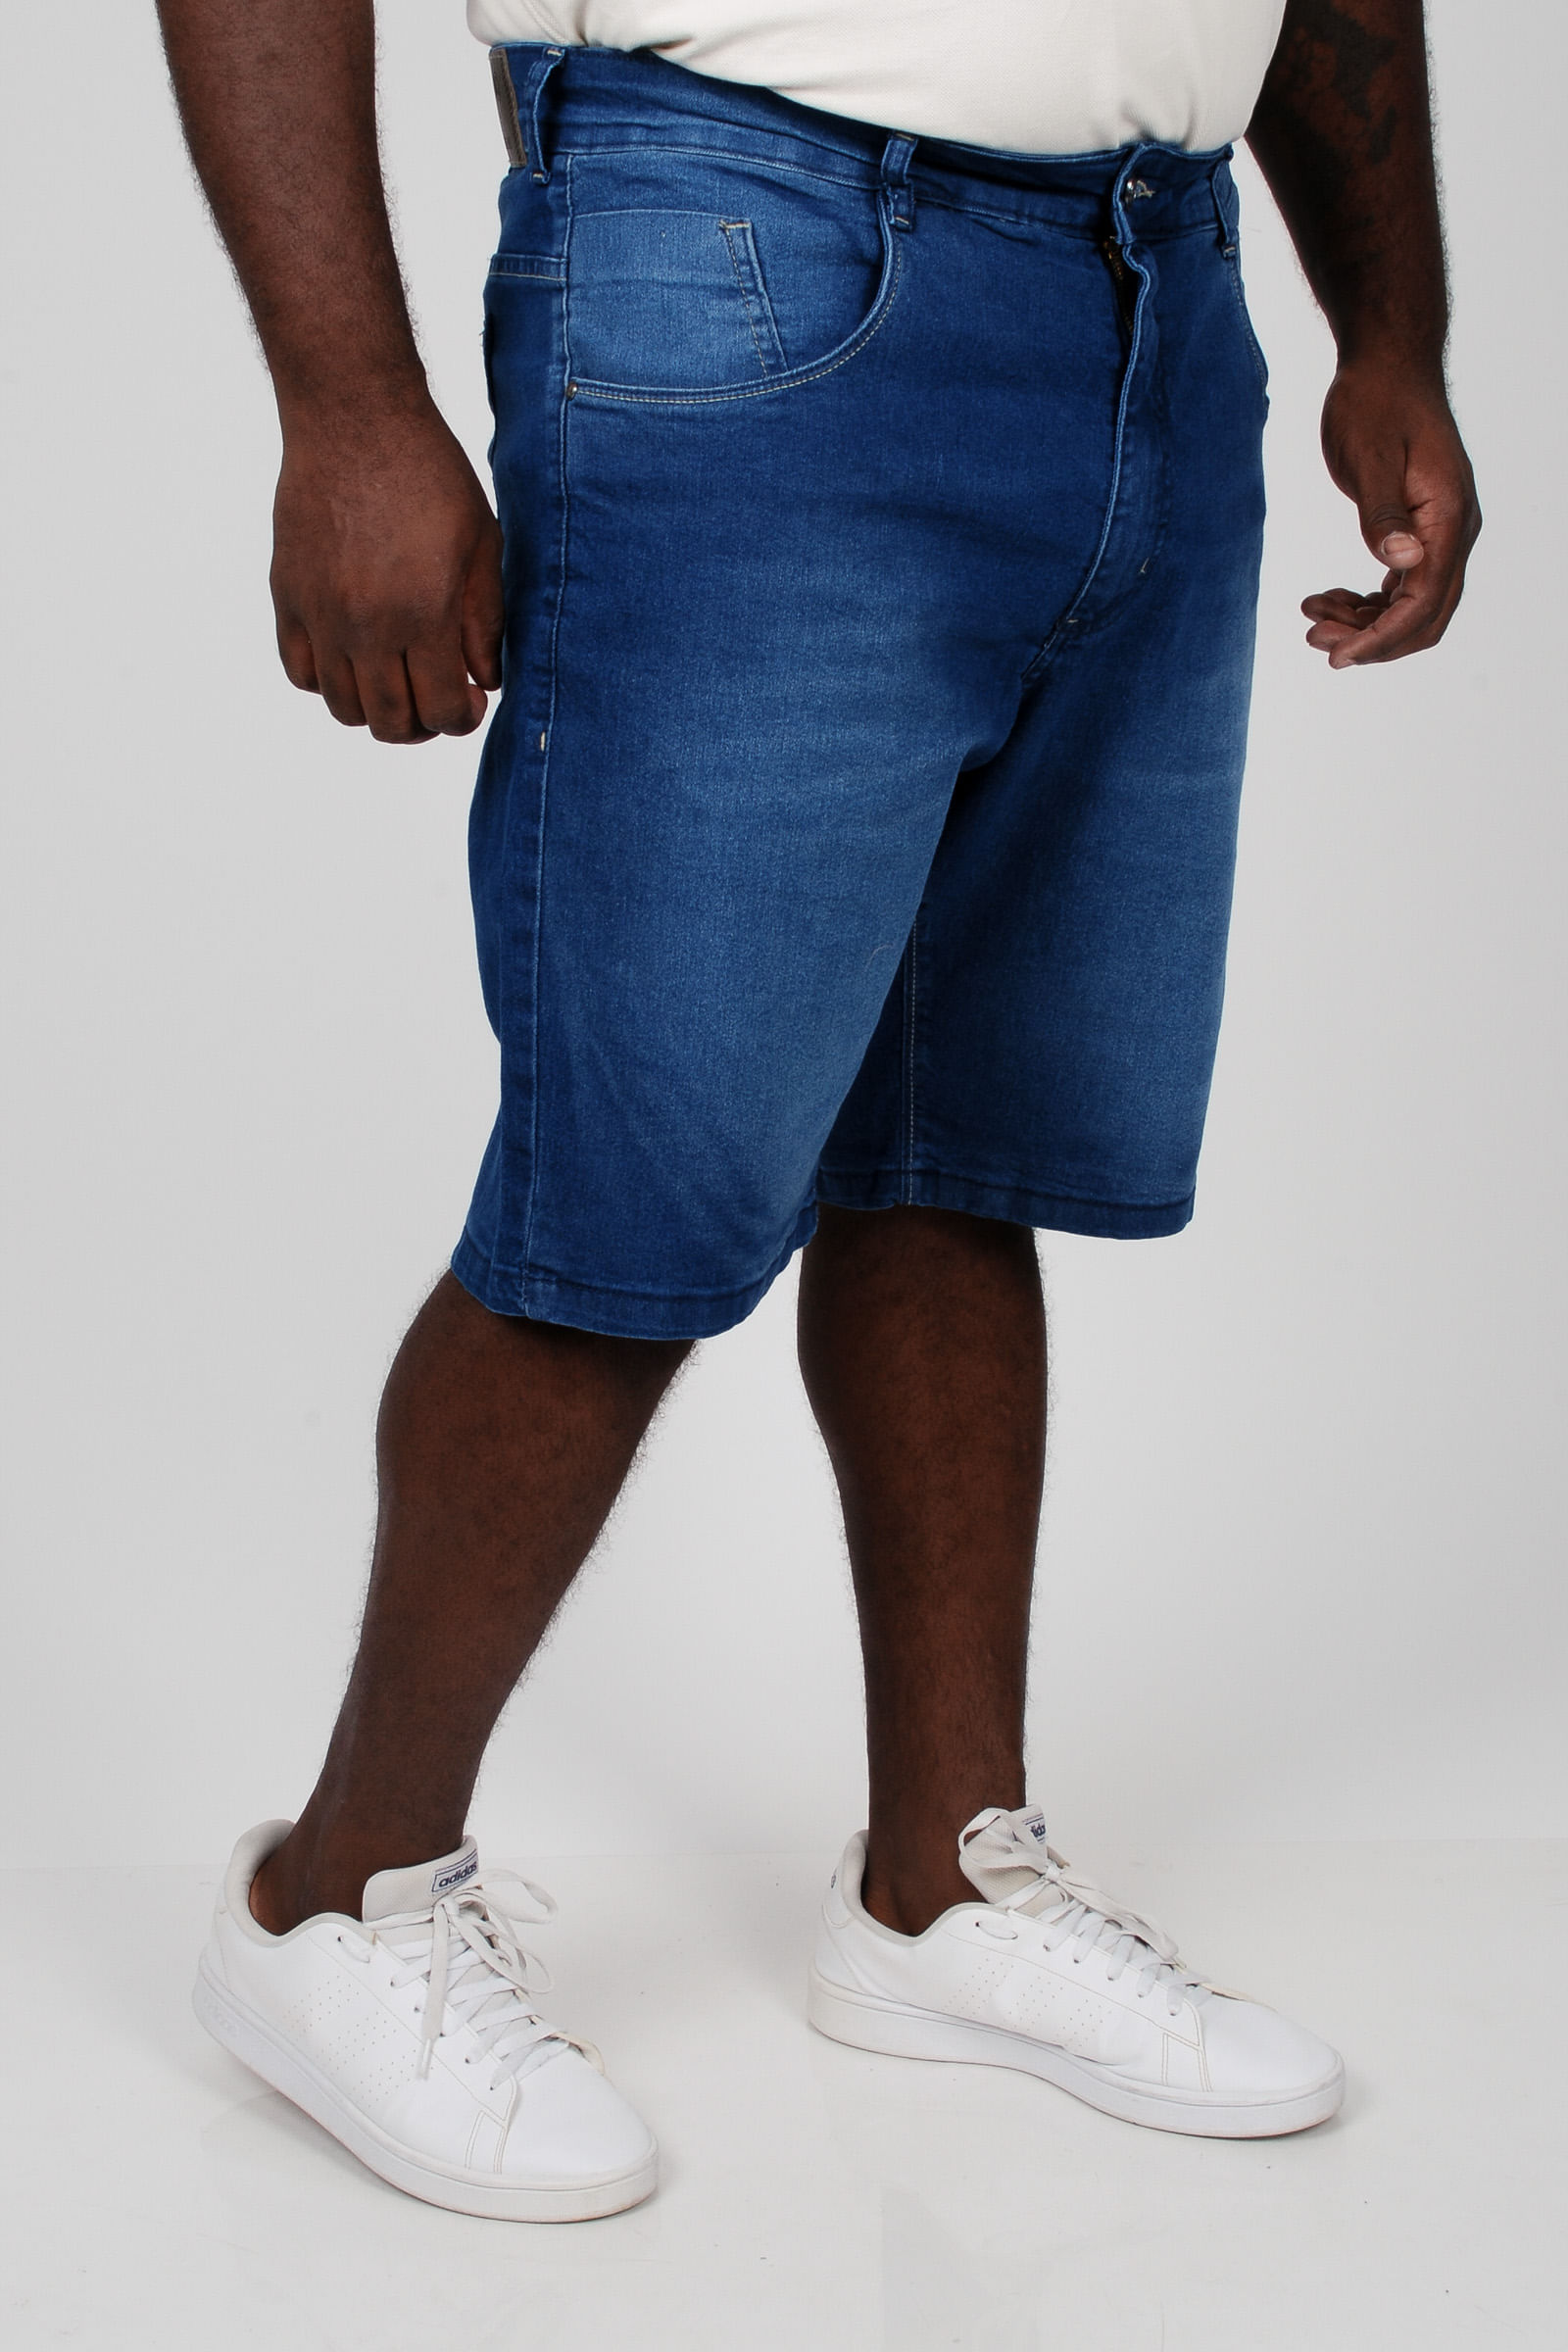 Bermuda-jeans-masculina-plus-size_0102_3